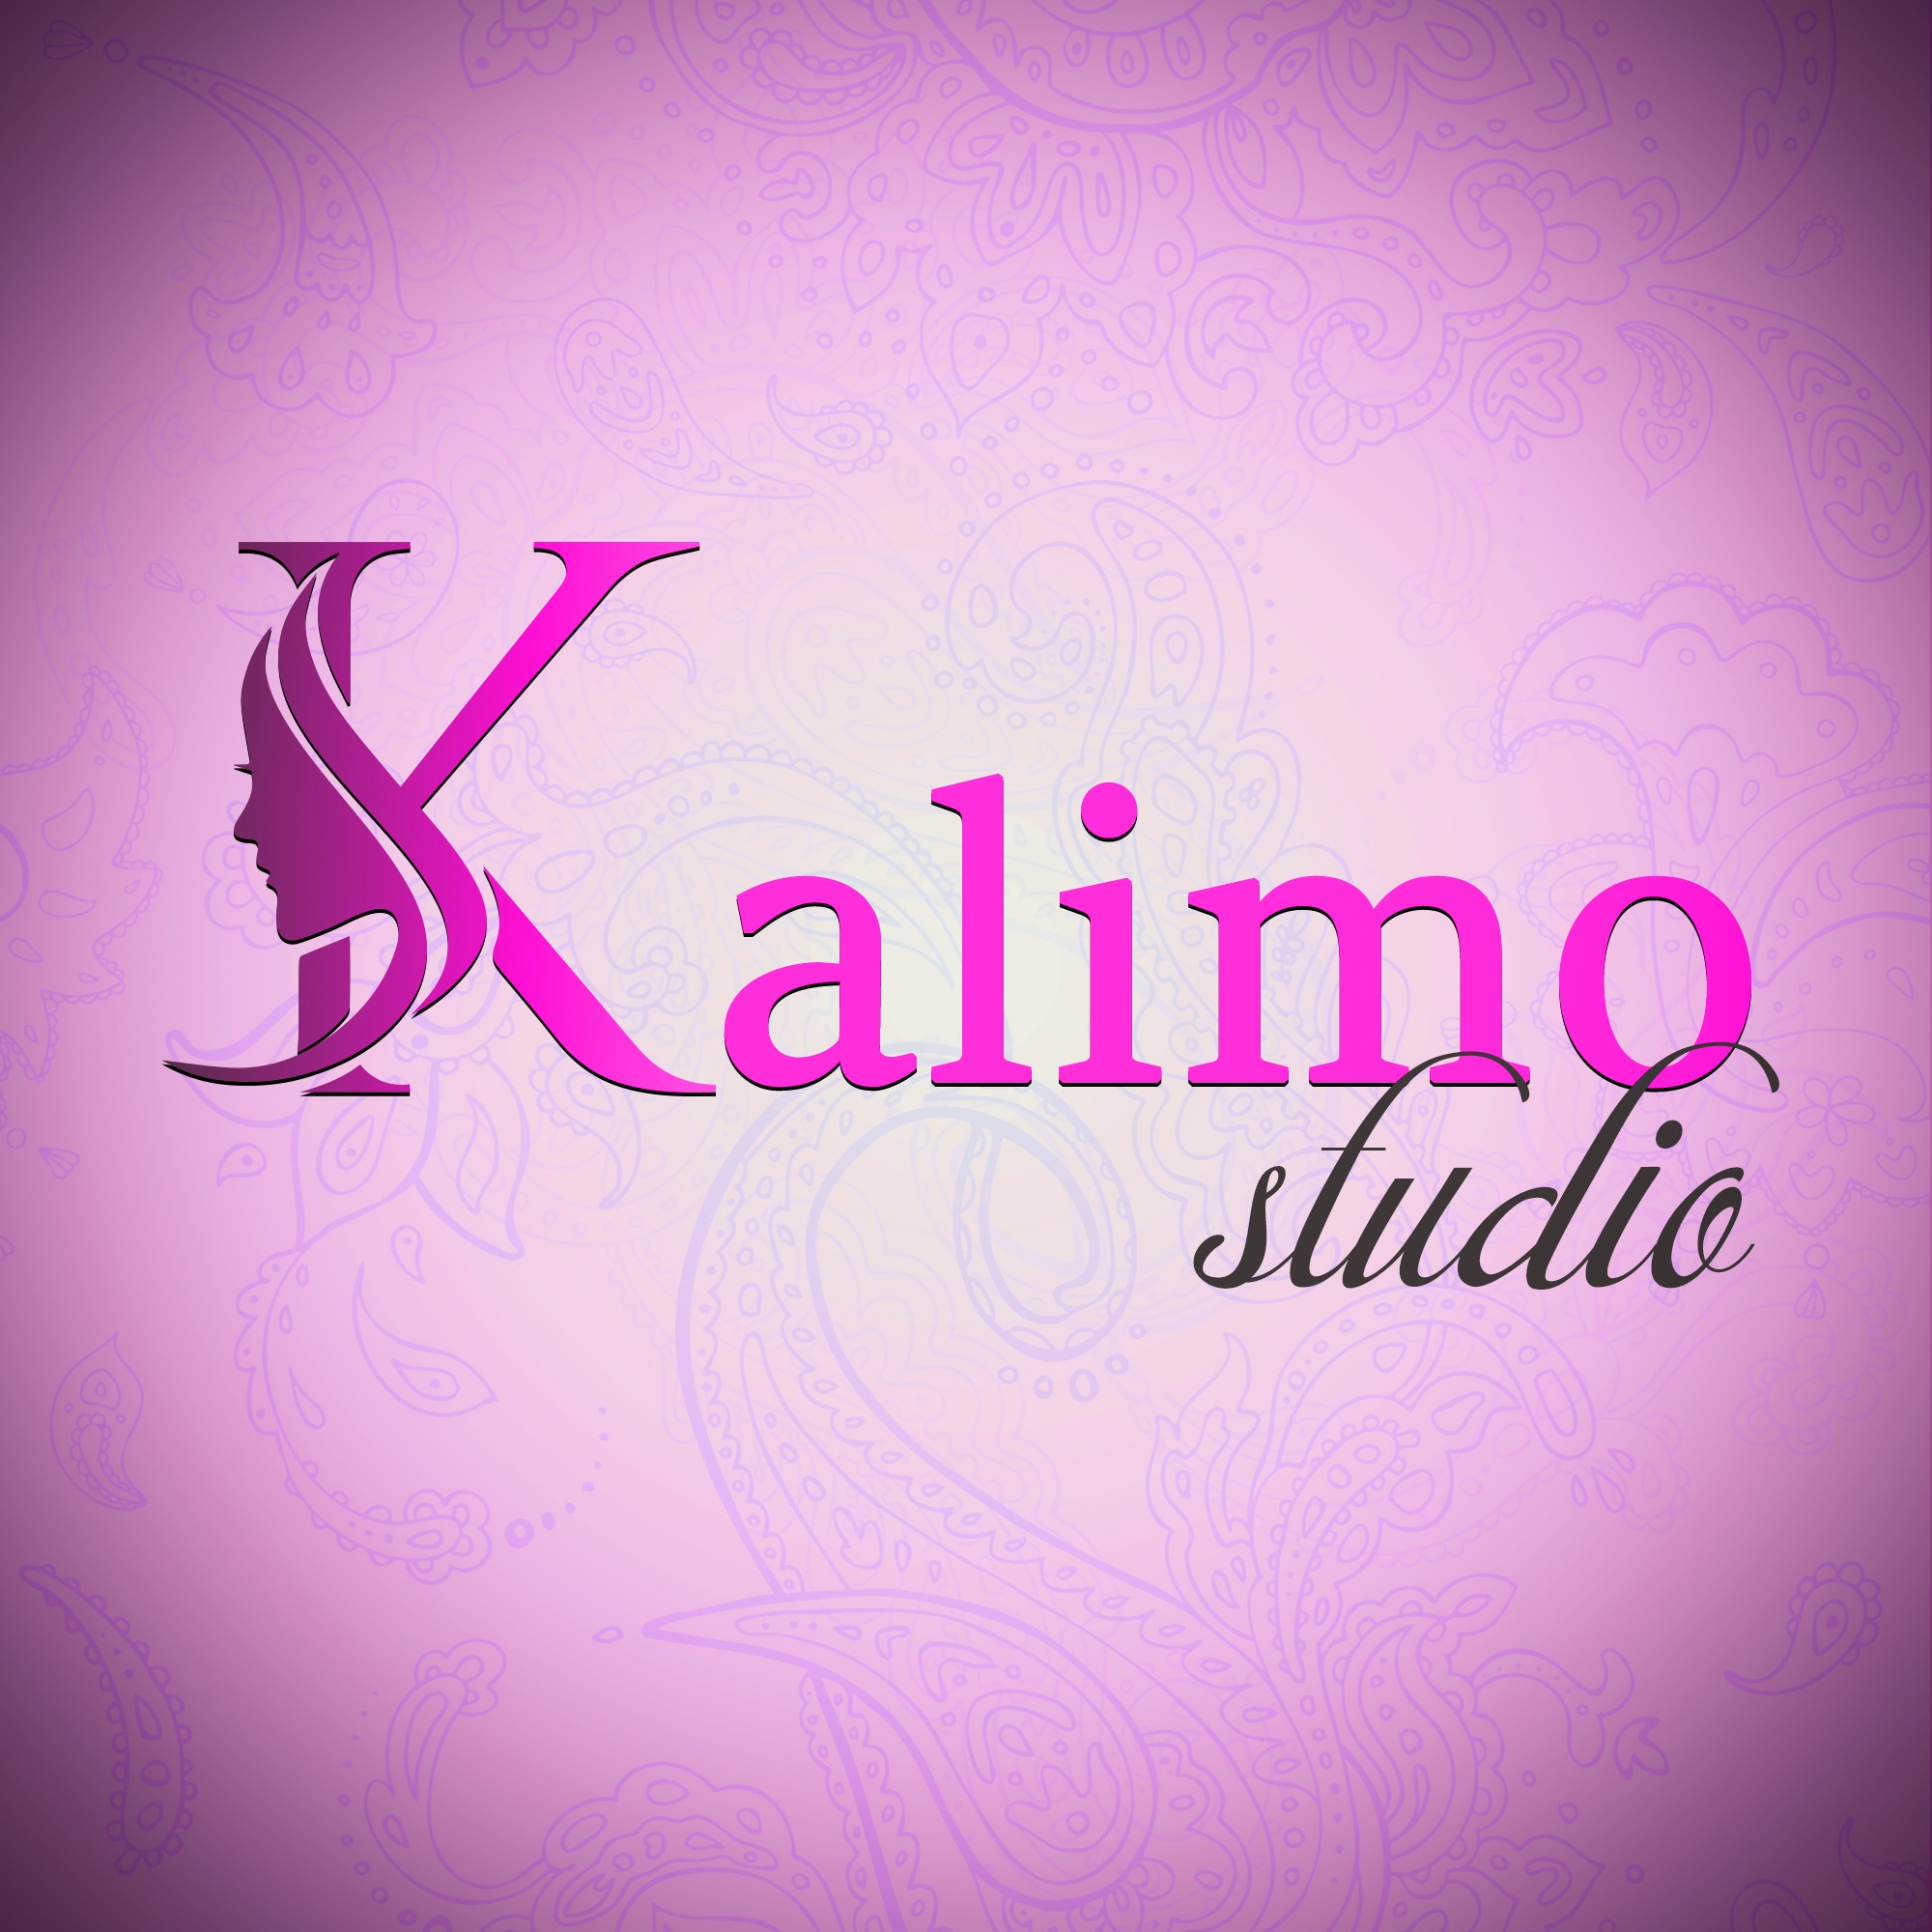 Kalimo Studio фото 1